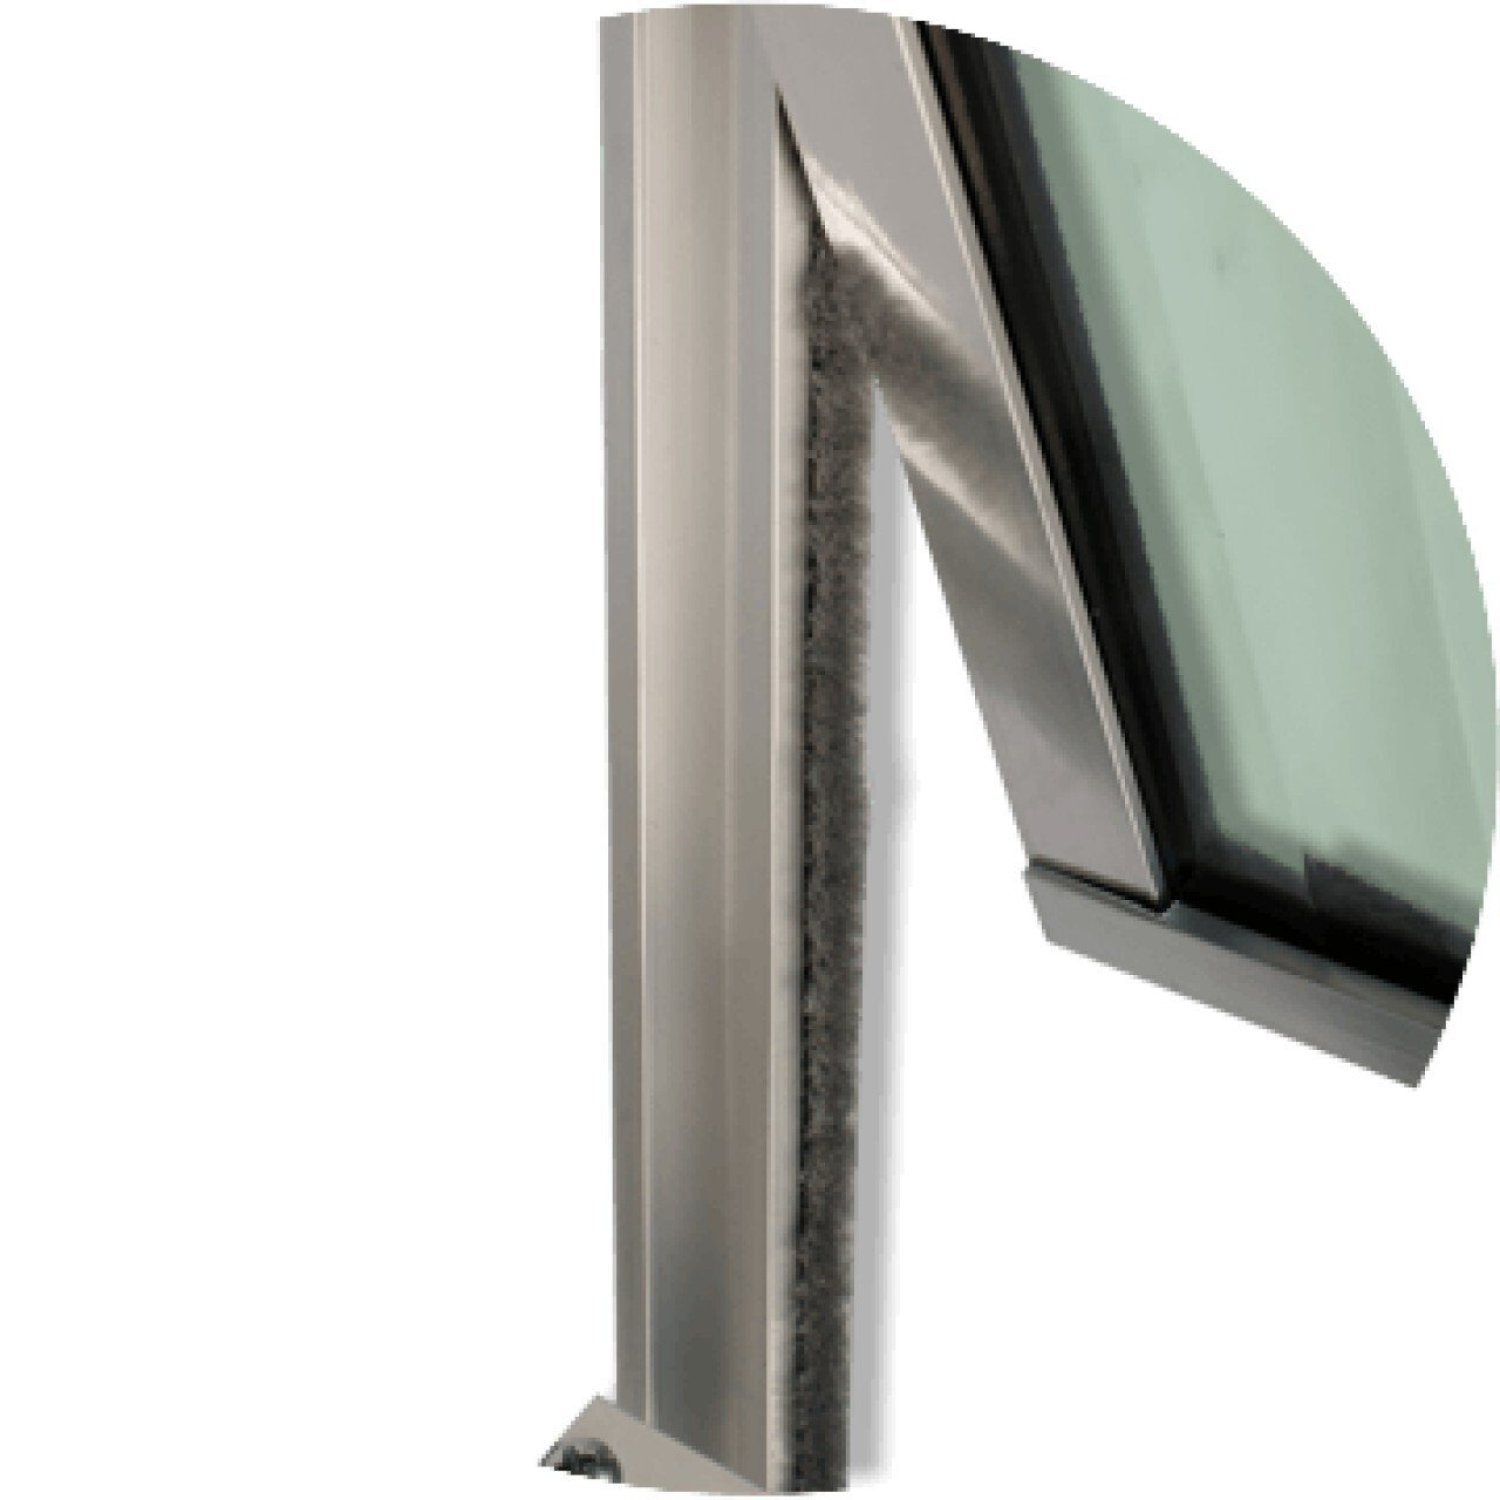 Janela Basculante de Alumínio 60x200cm 2 Seções com Vidro Boreal Plus Brimak - 2